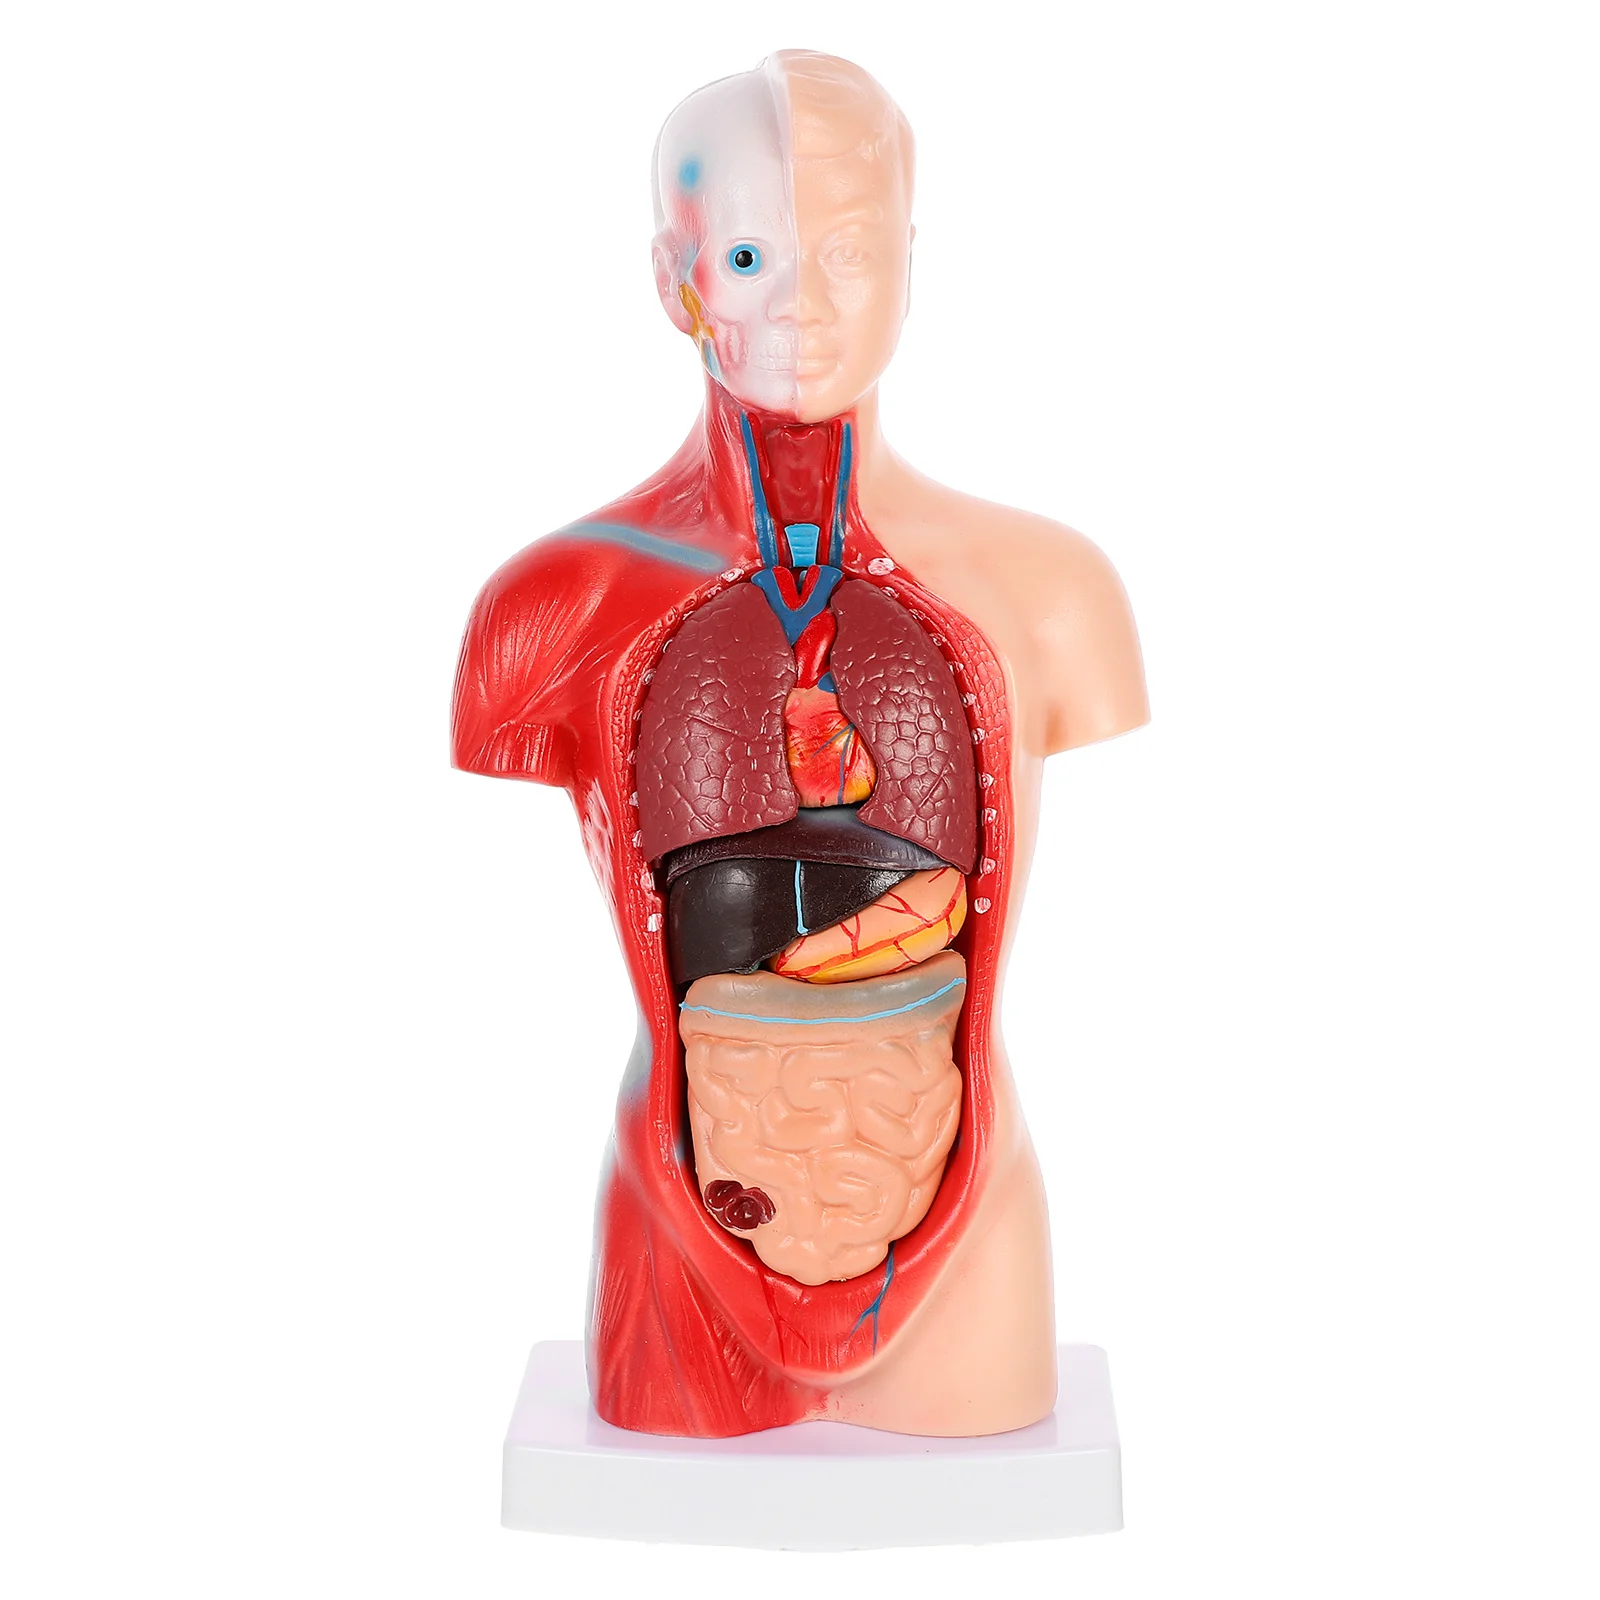 

Модель анатомии человека, демонстрационный манекен, фигурка тела, внутренние органы, медицинское обучение анатомии